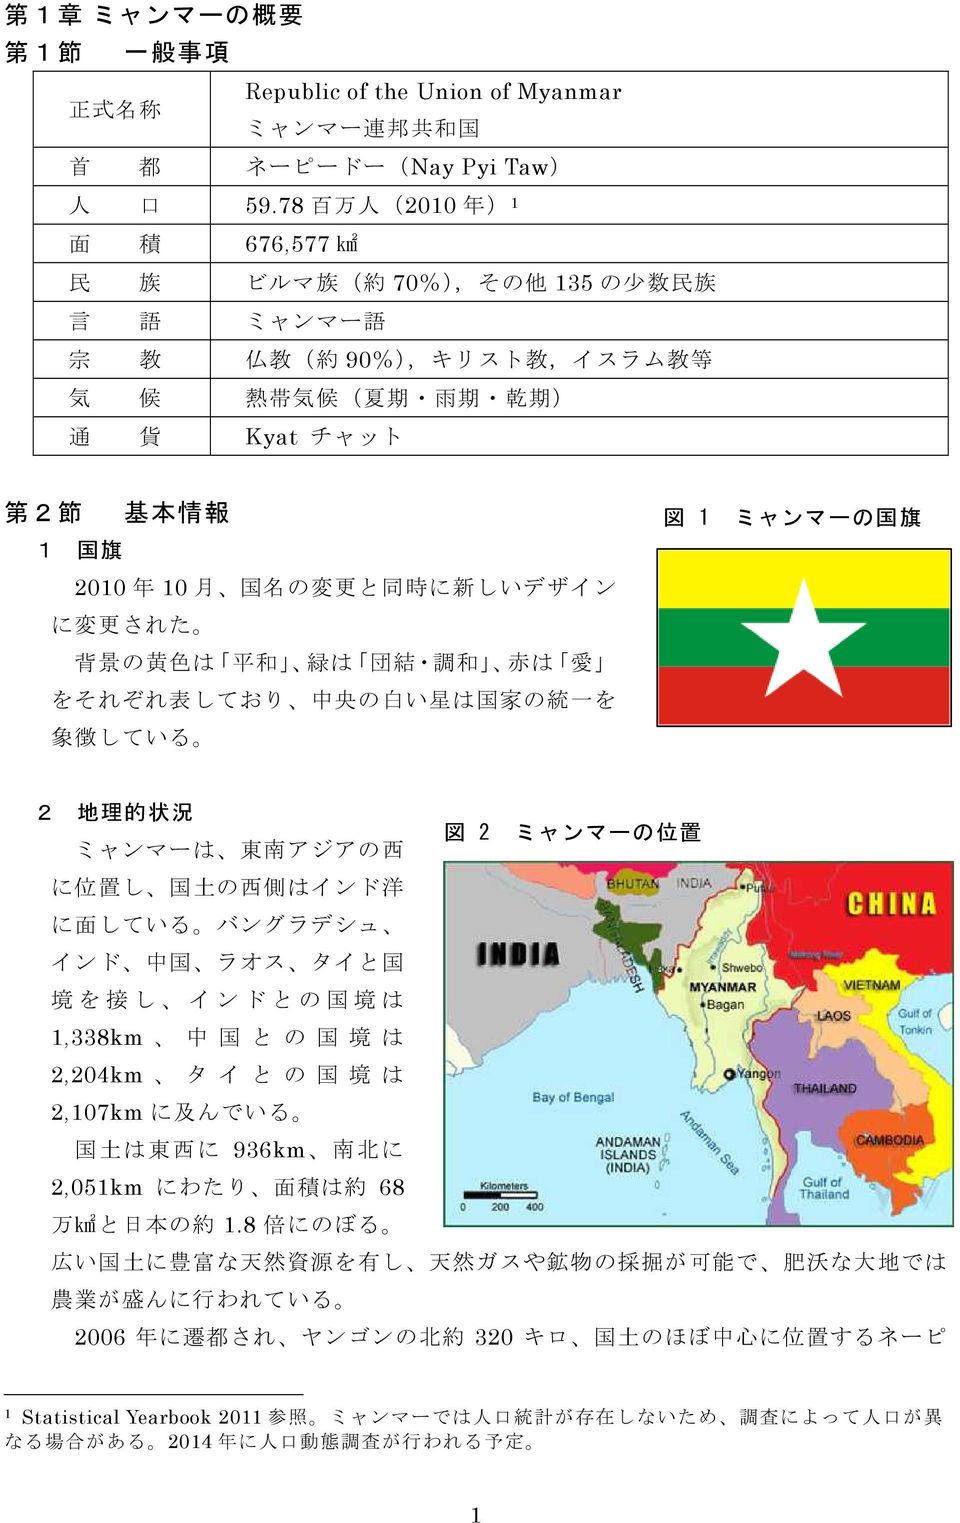 変 更 と 同 時 に 新 しいデザイン に 変 更 された 背 景 の 黄 色 は 平 和 緑 は 団 結 調 和 赤 は 愛 をそれぞれ 表 しており 中 央 の 白 い 星 は 国 家 の 統 一 を 象 徴 している 図 1 ミャンマーの 国 旗 2 地 理 的 状 況 図 2 ミャンマーの 位 置 ミャンマーは 東 南 アジアの 西 に 位 置 し 国 土 の 西 側 はインド 洋 に